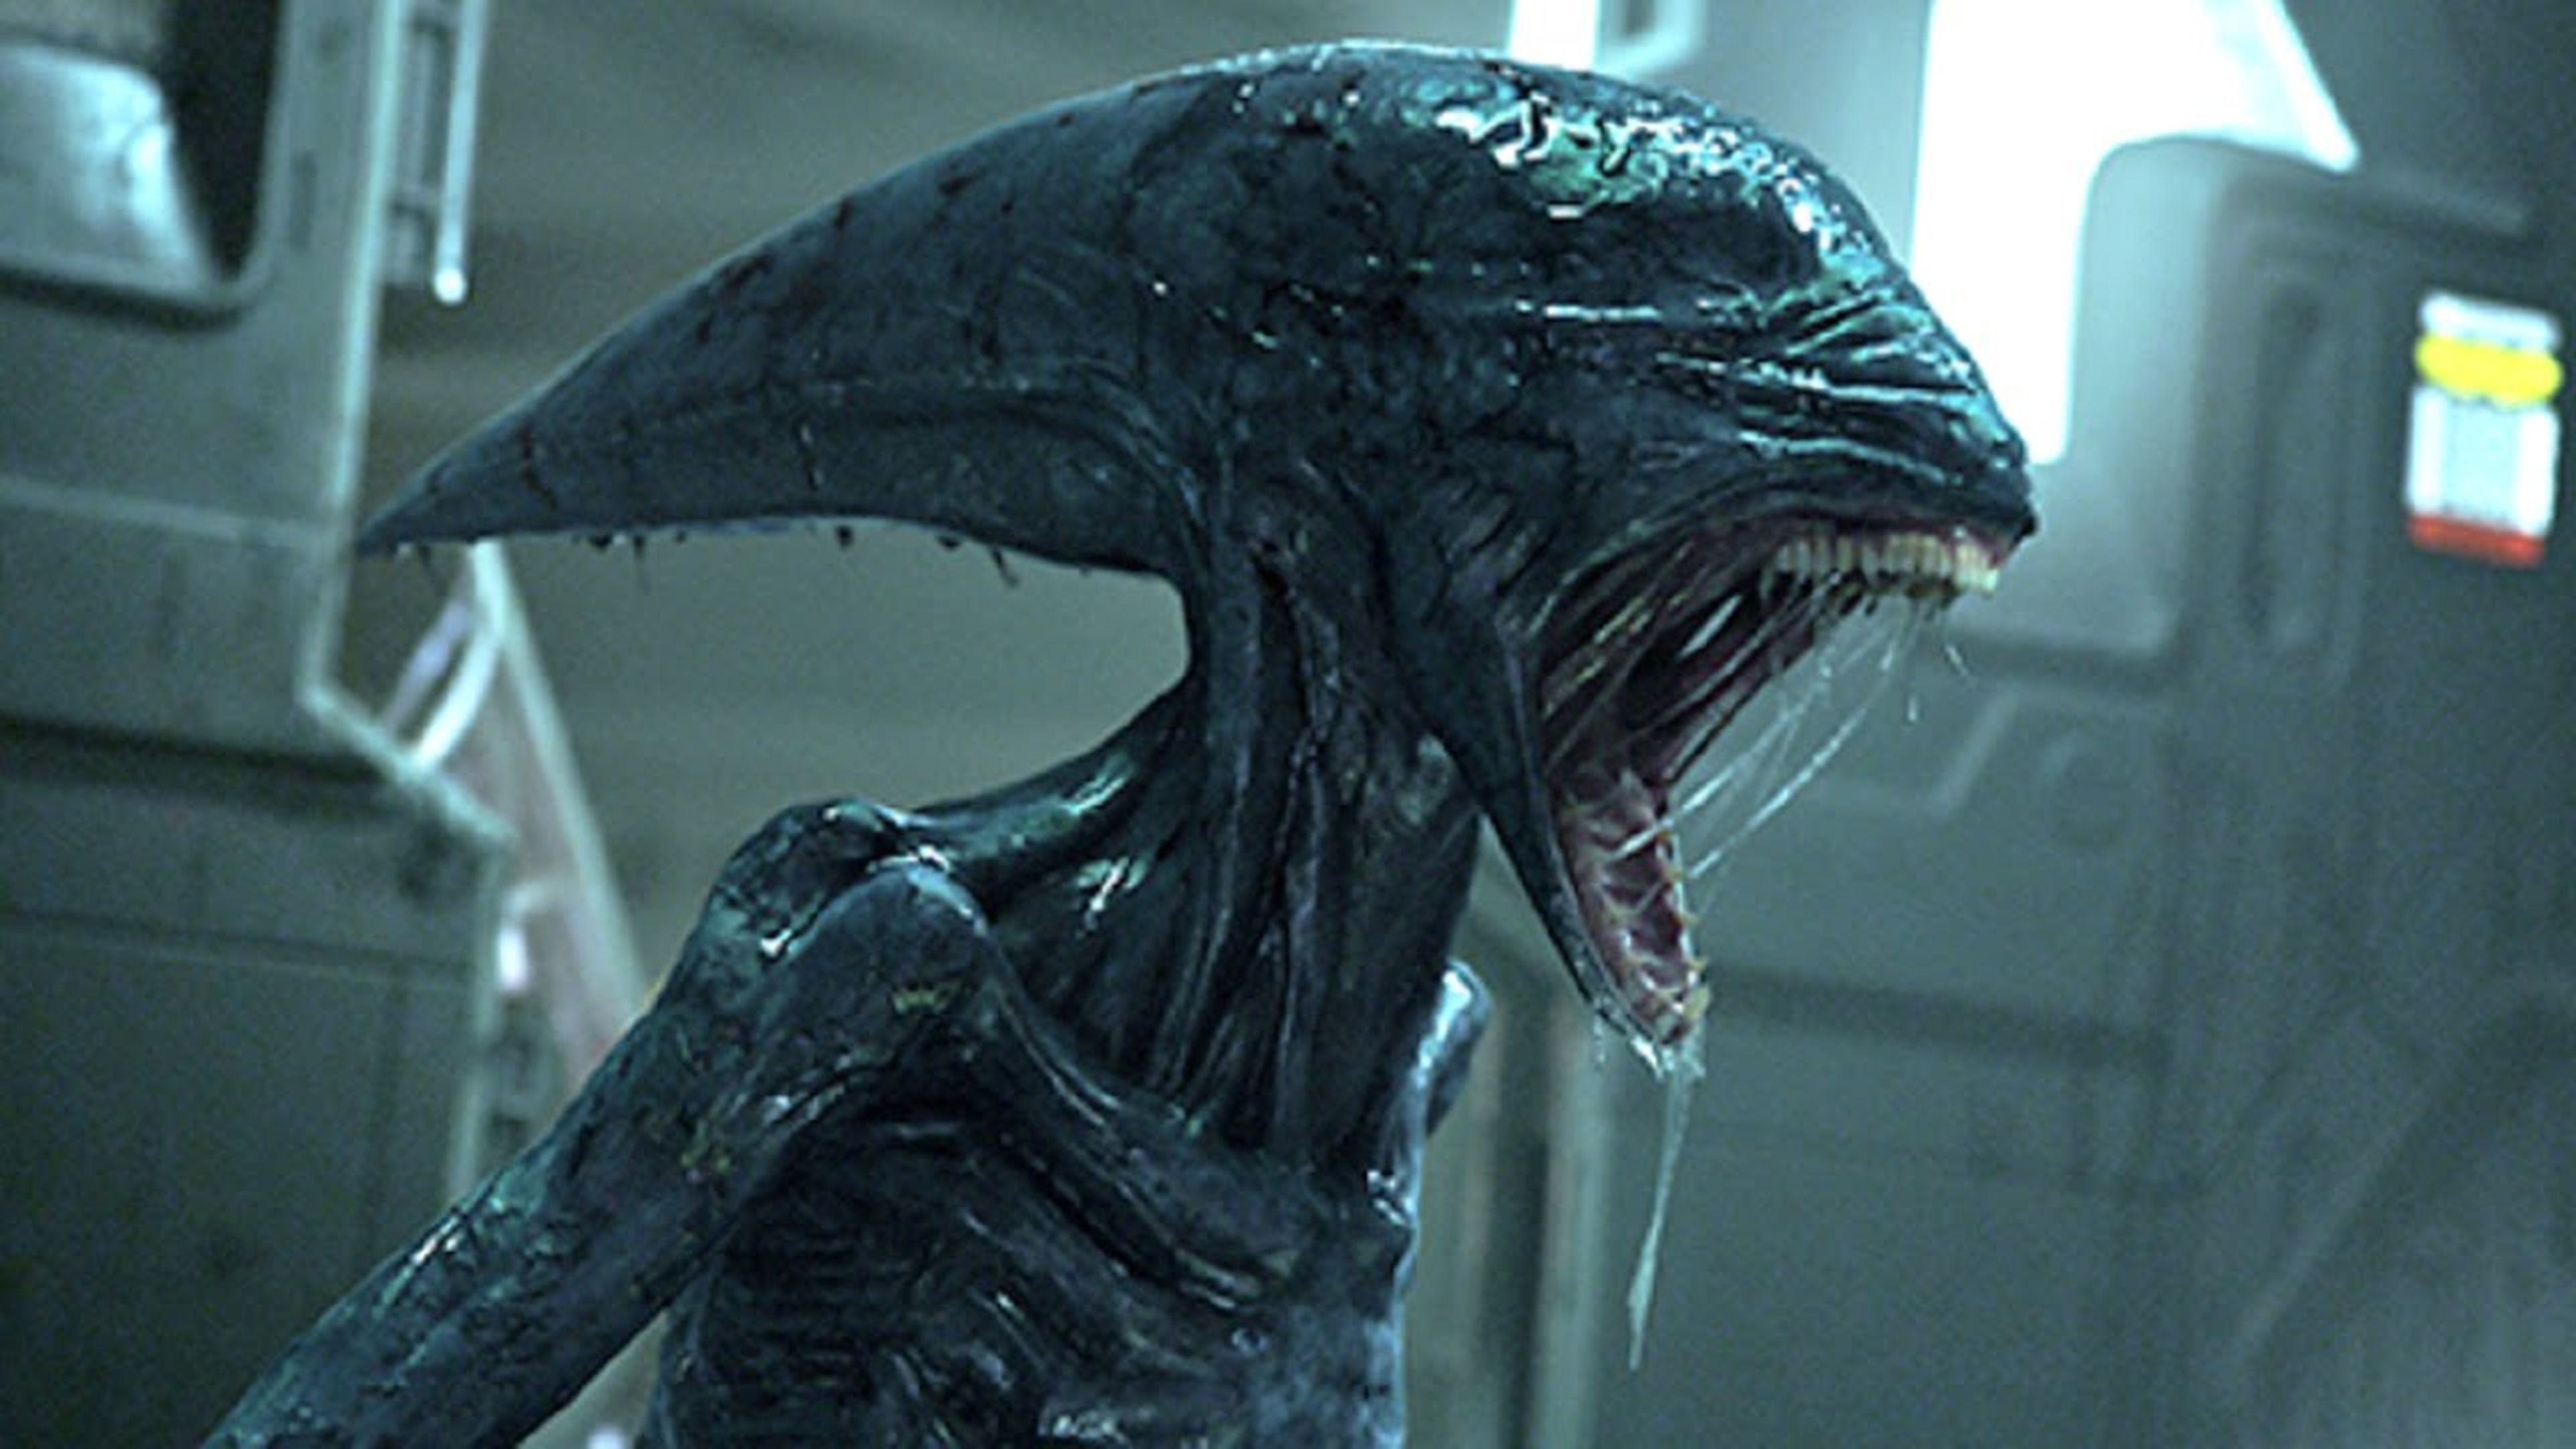 Prometheus tendrá dos secuelas además de Alien: Covenant